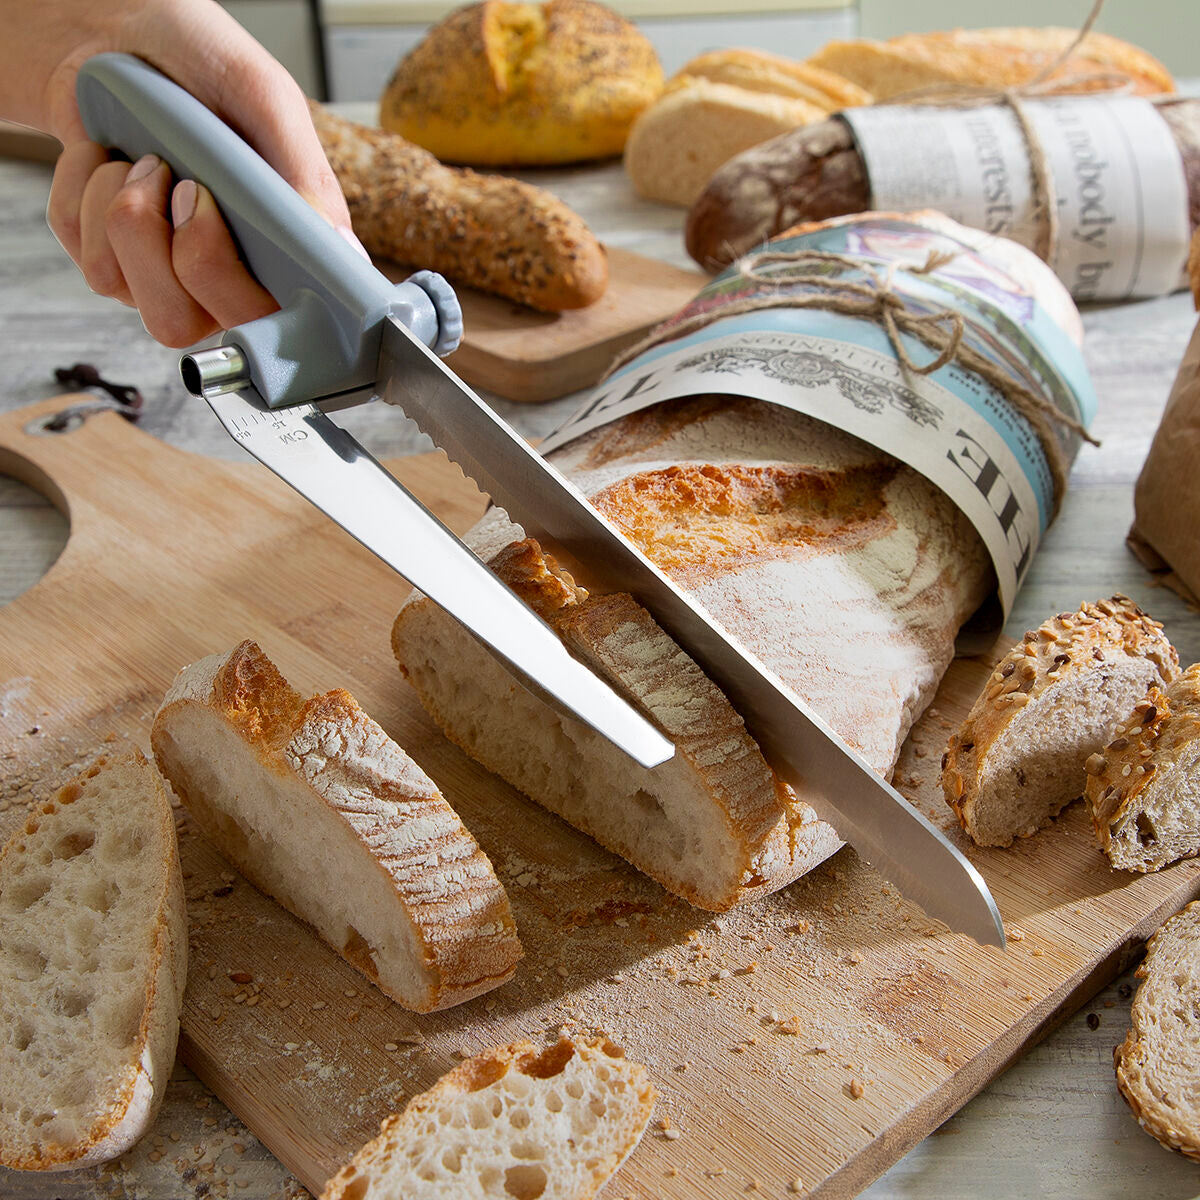 Faca de pão com guia de corte ajustável Kutway InnovAgoods